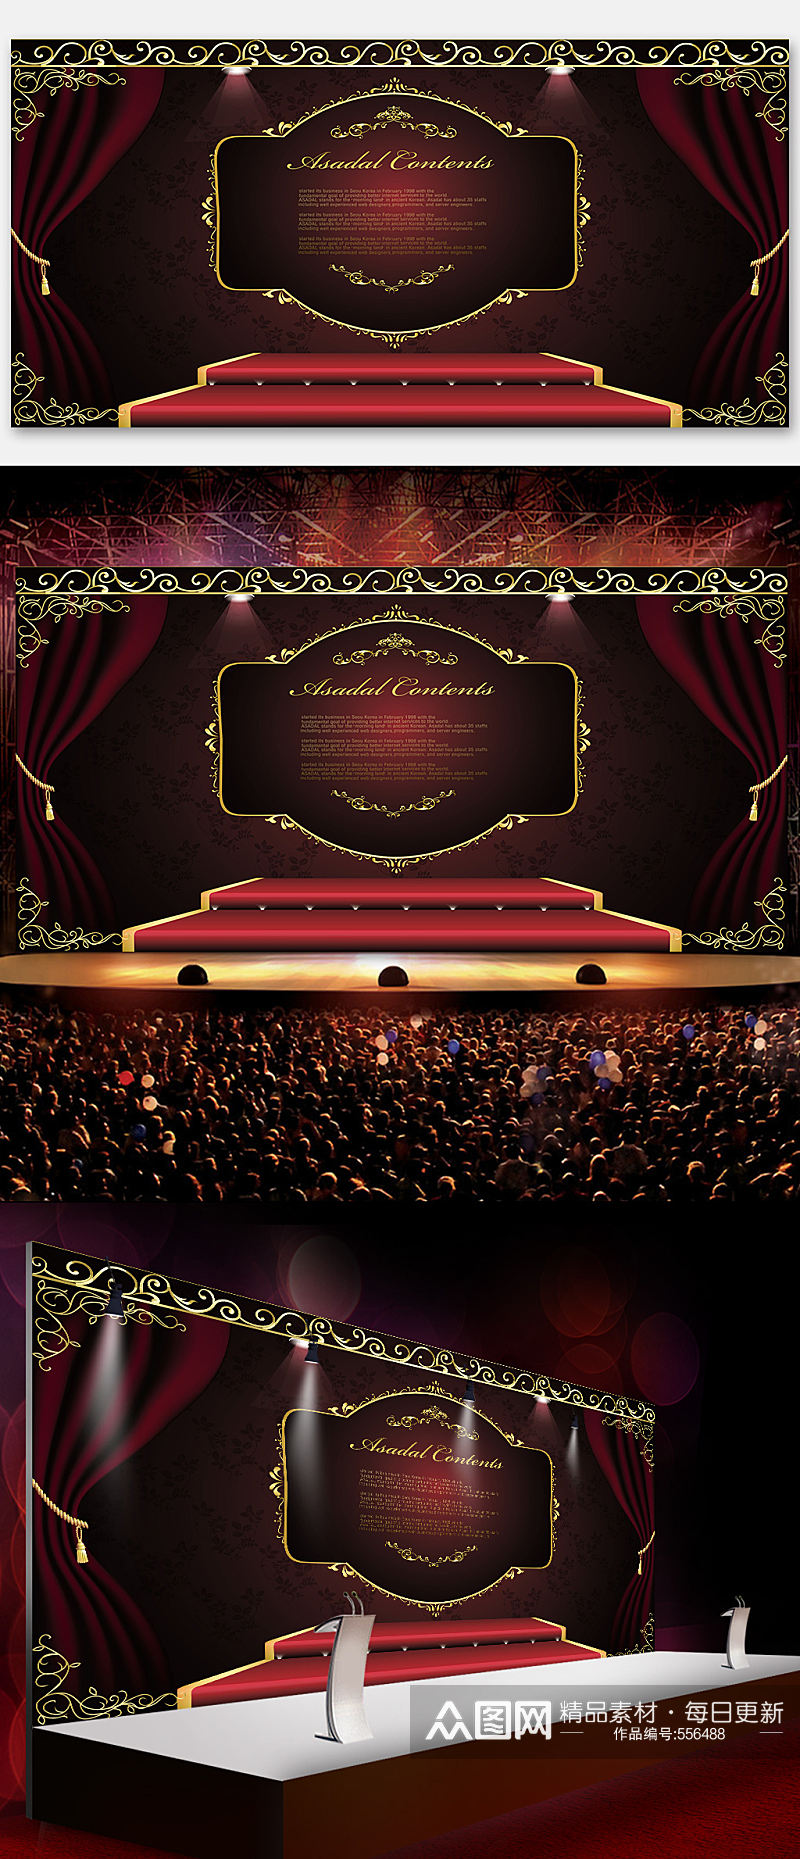 红色精品舞台欧式背景设计素材